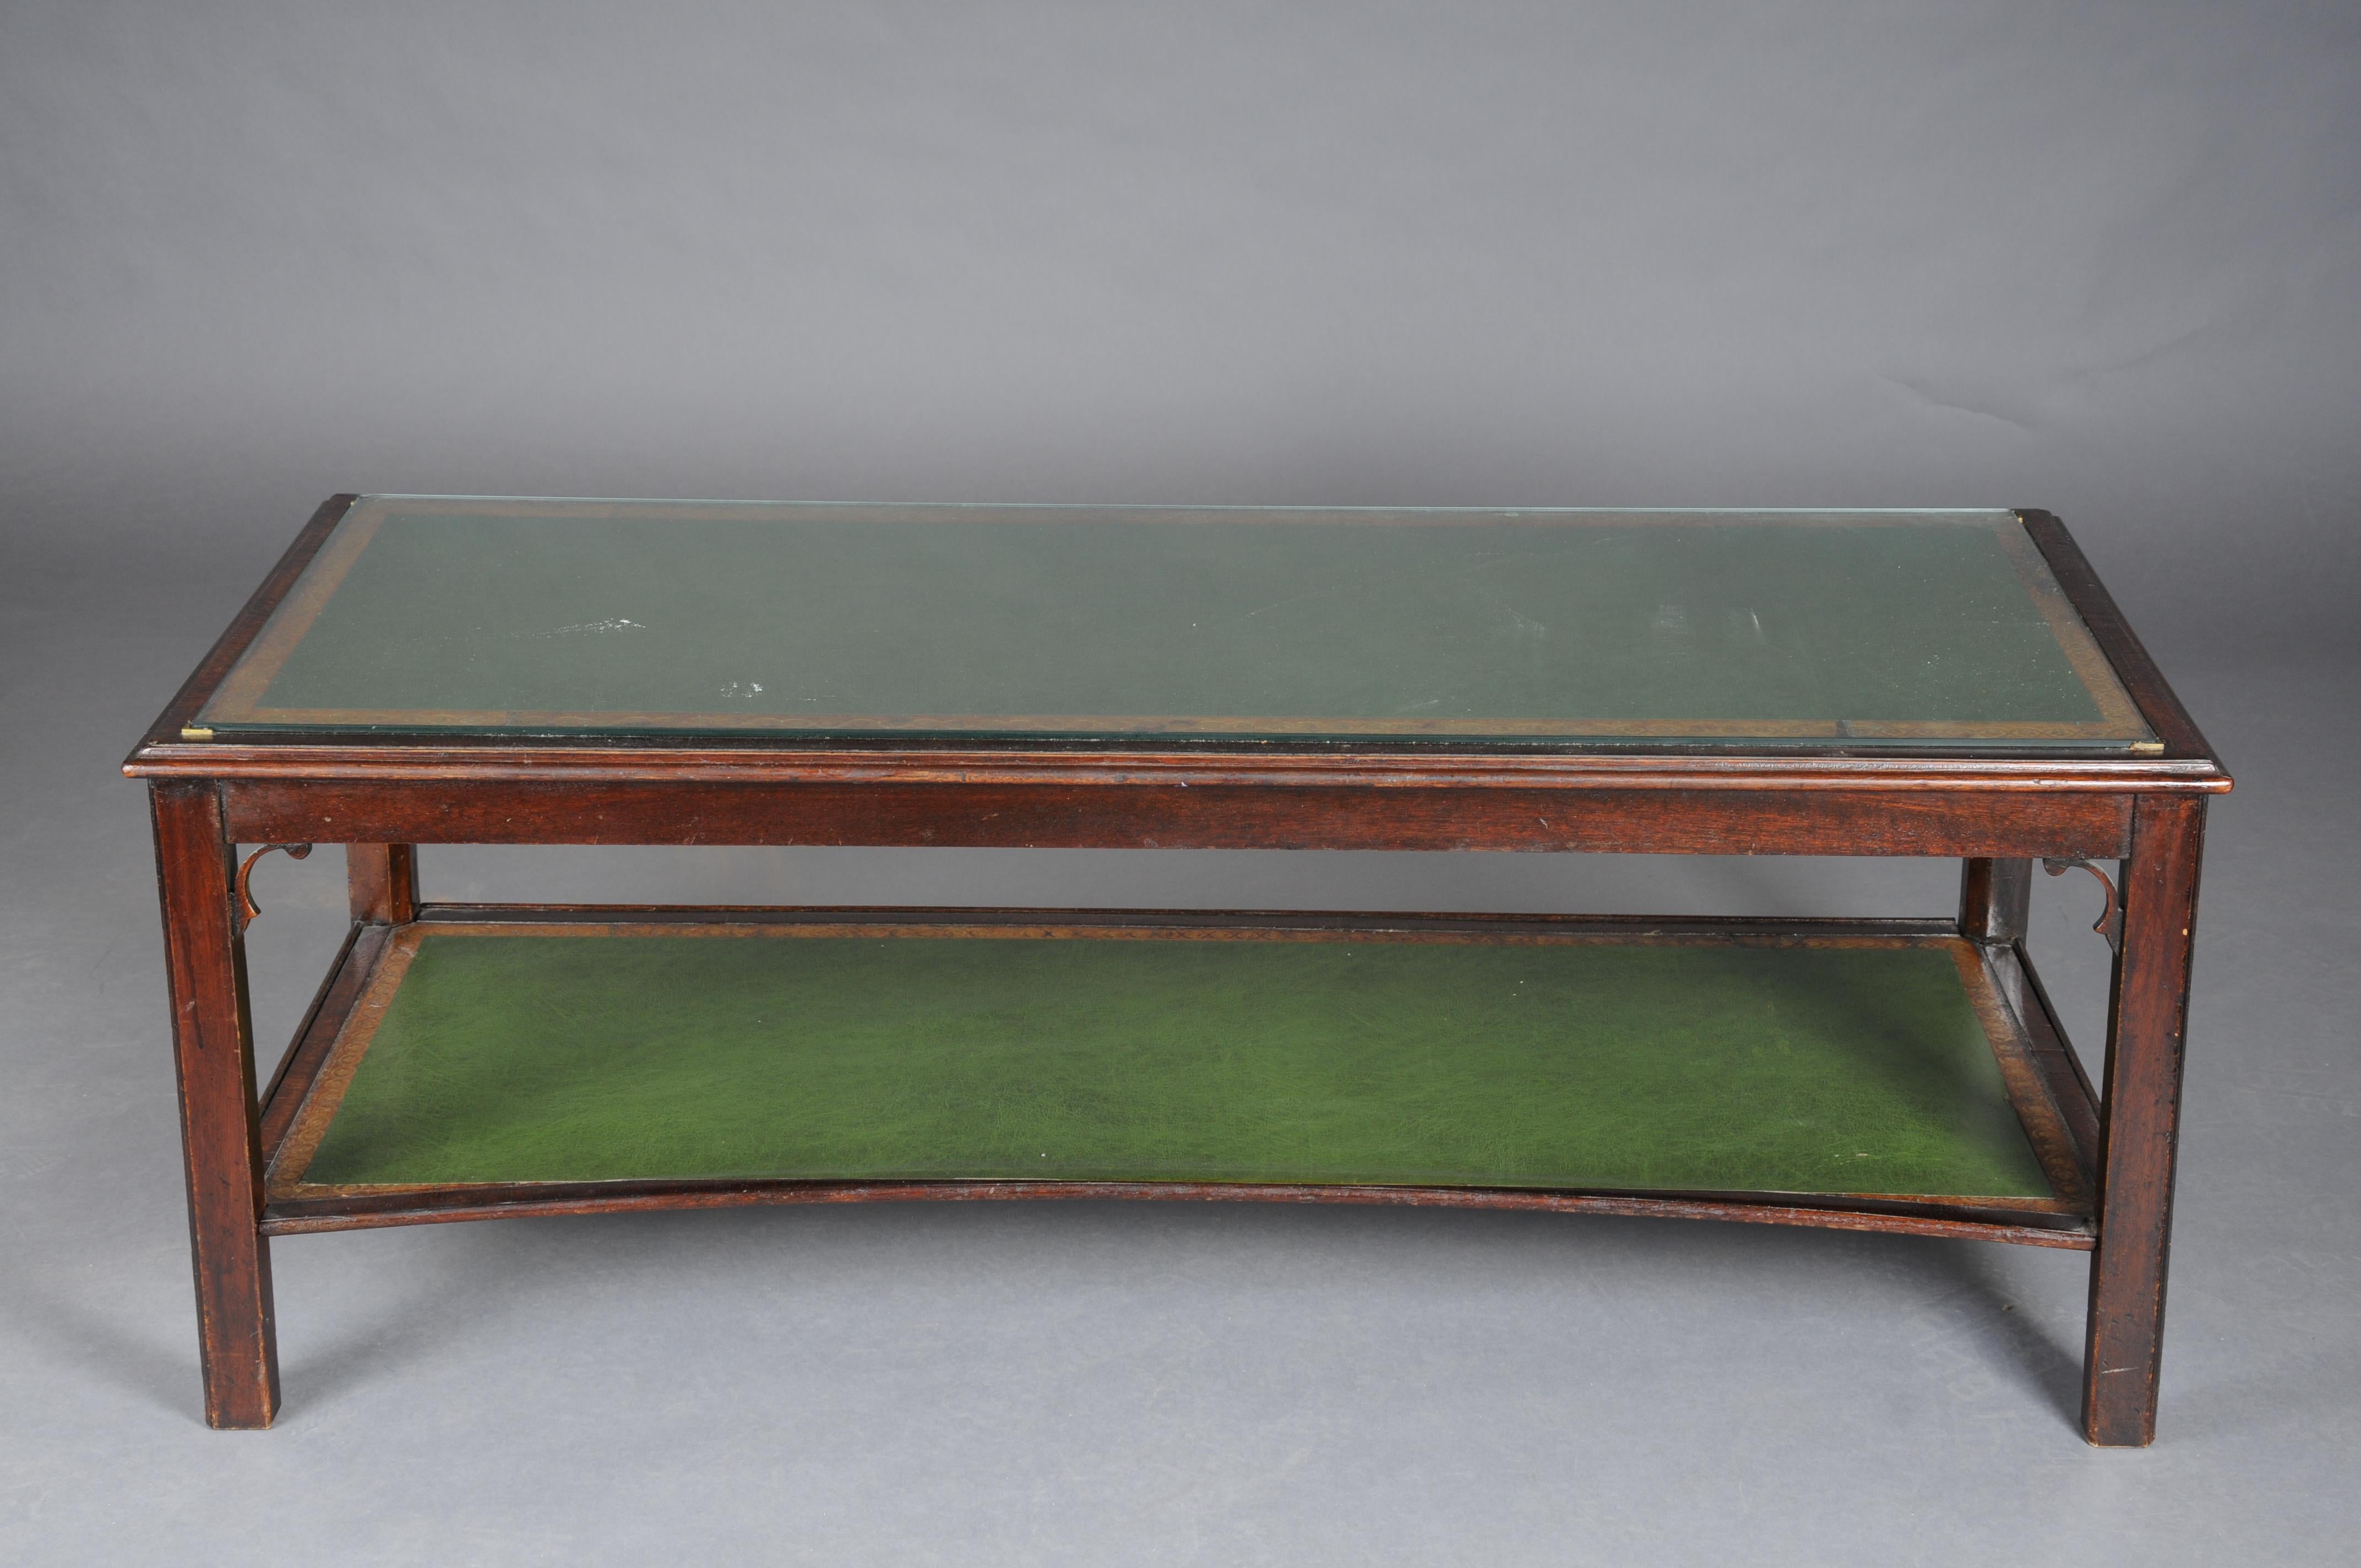 Début du 20e siècle Table basse anglaise classique avec plateau en cuir

Corps en bois mobile. Partiellement meublé en acajou sur deux niveaux. Couvrir la plaque avec une plaque de verre.
Recouvert de cuir vert.

